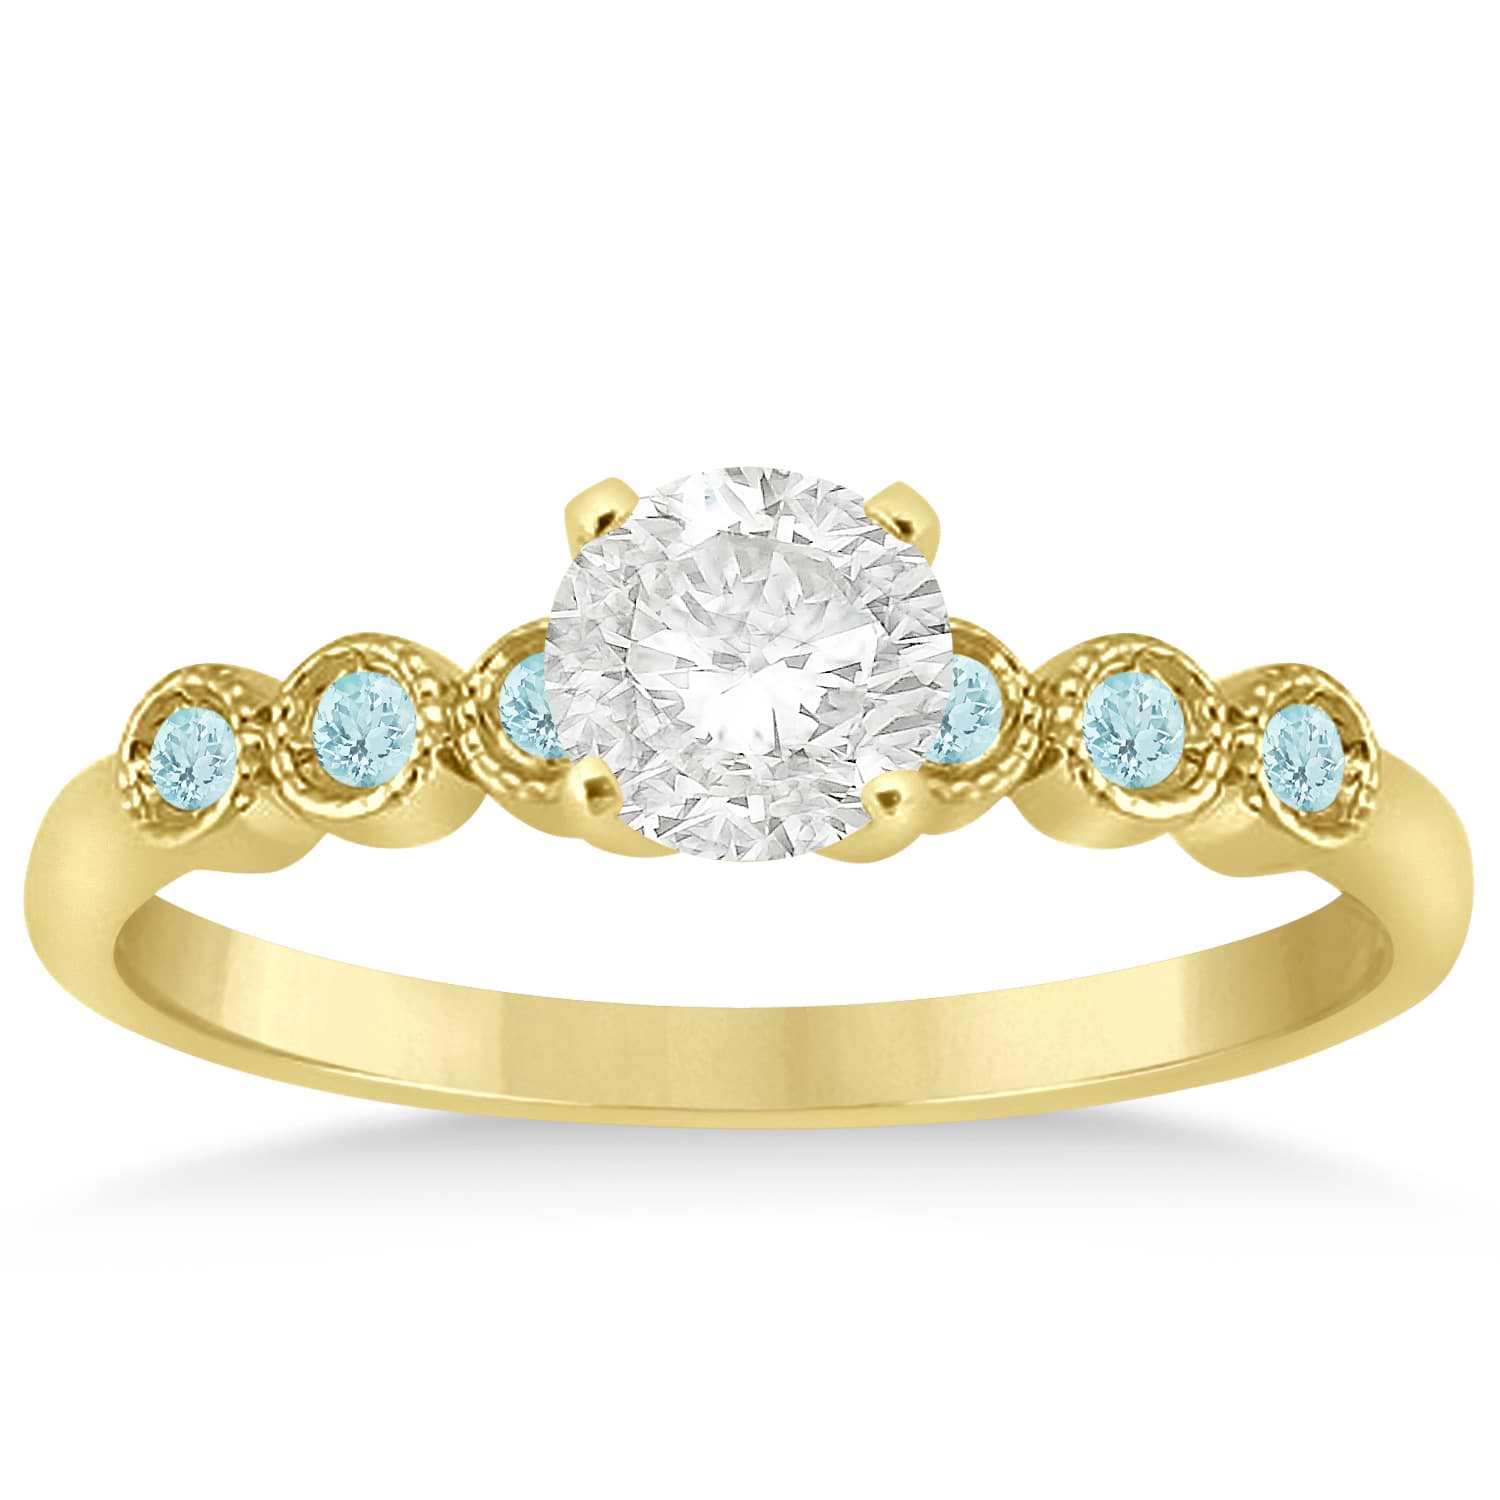 Aquamarine Bezel Set Engagement Ring Setting 18k Yellow Gold 0.09ct